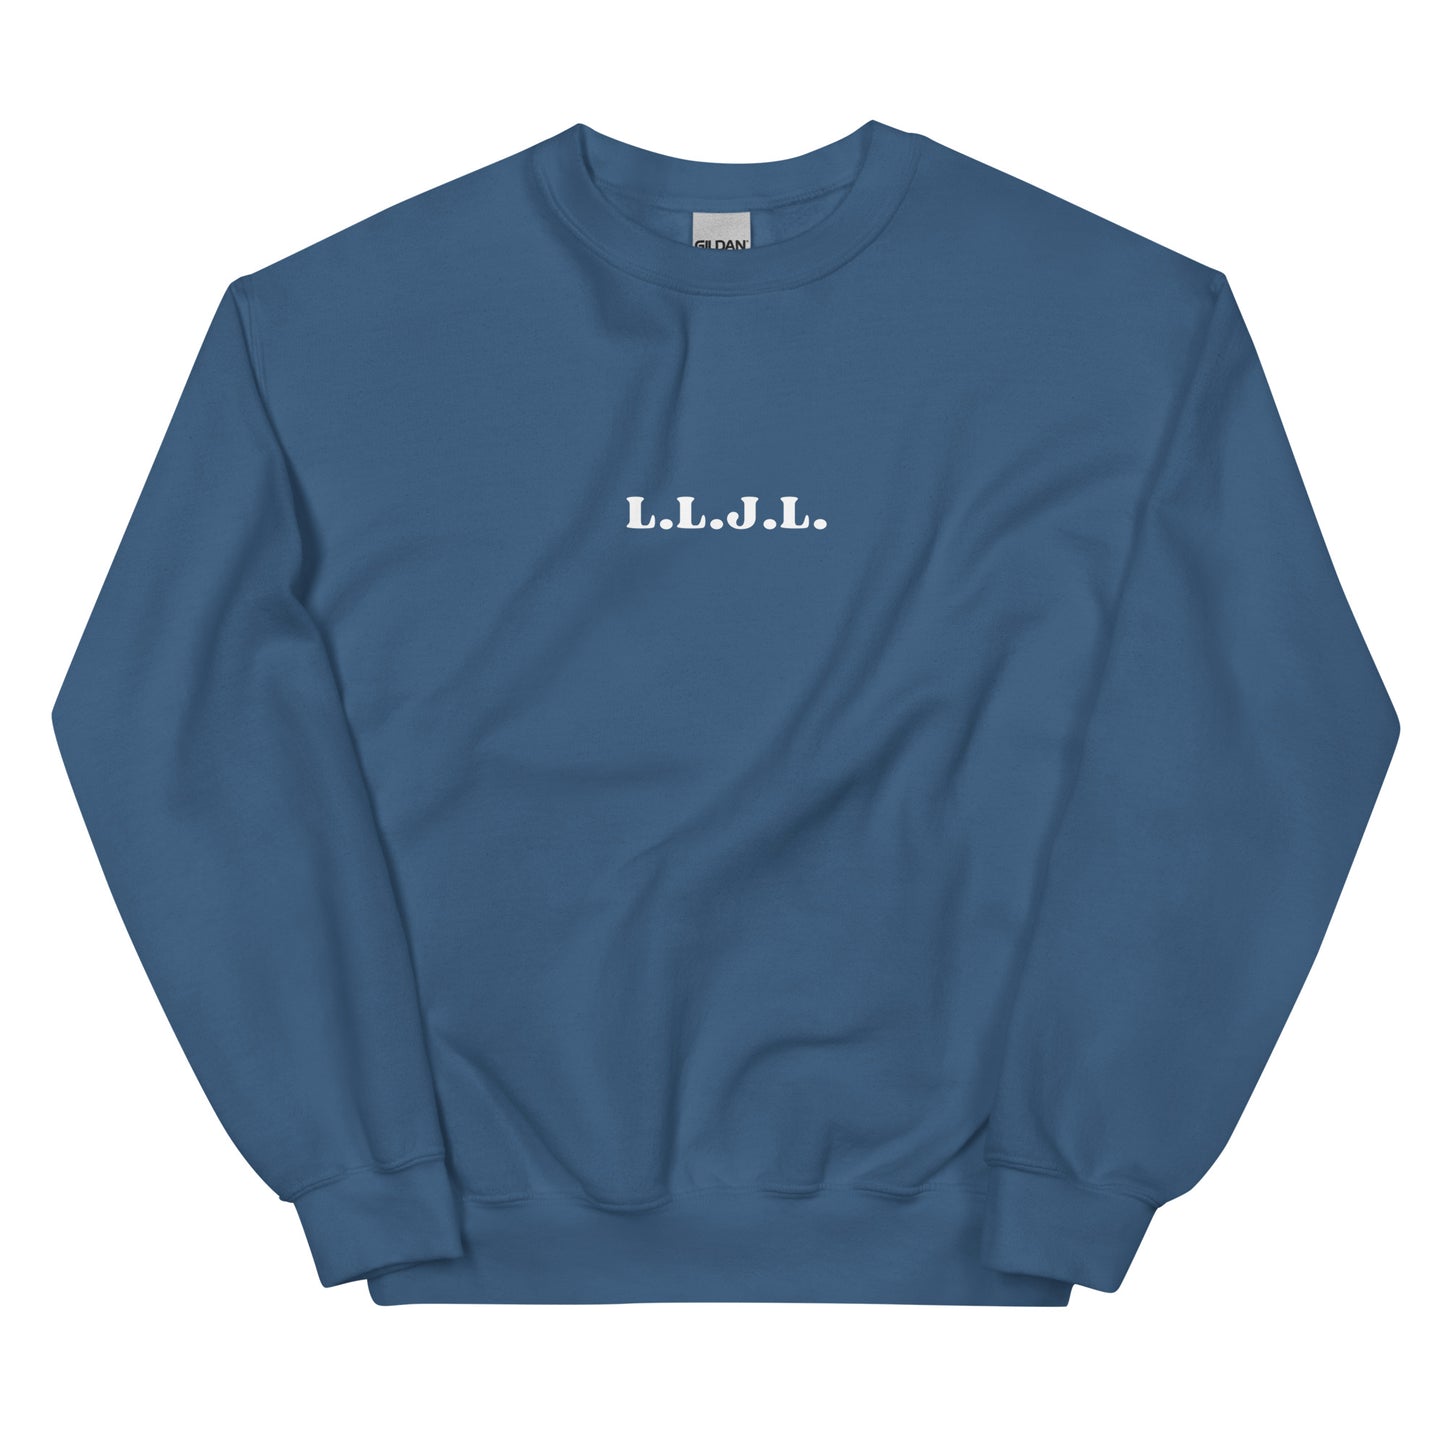 Love Like Jesus Loves - Unisex Sweatshirt